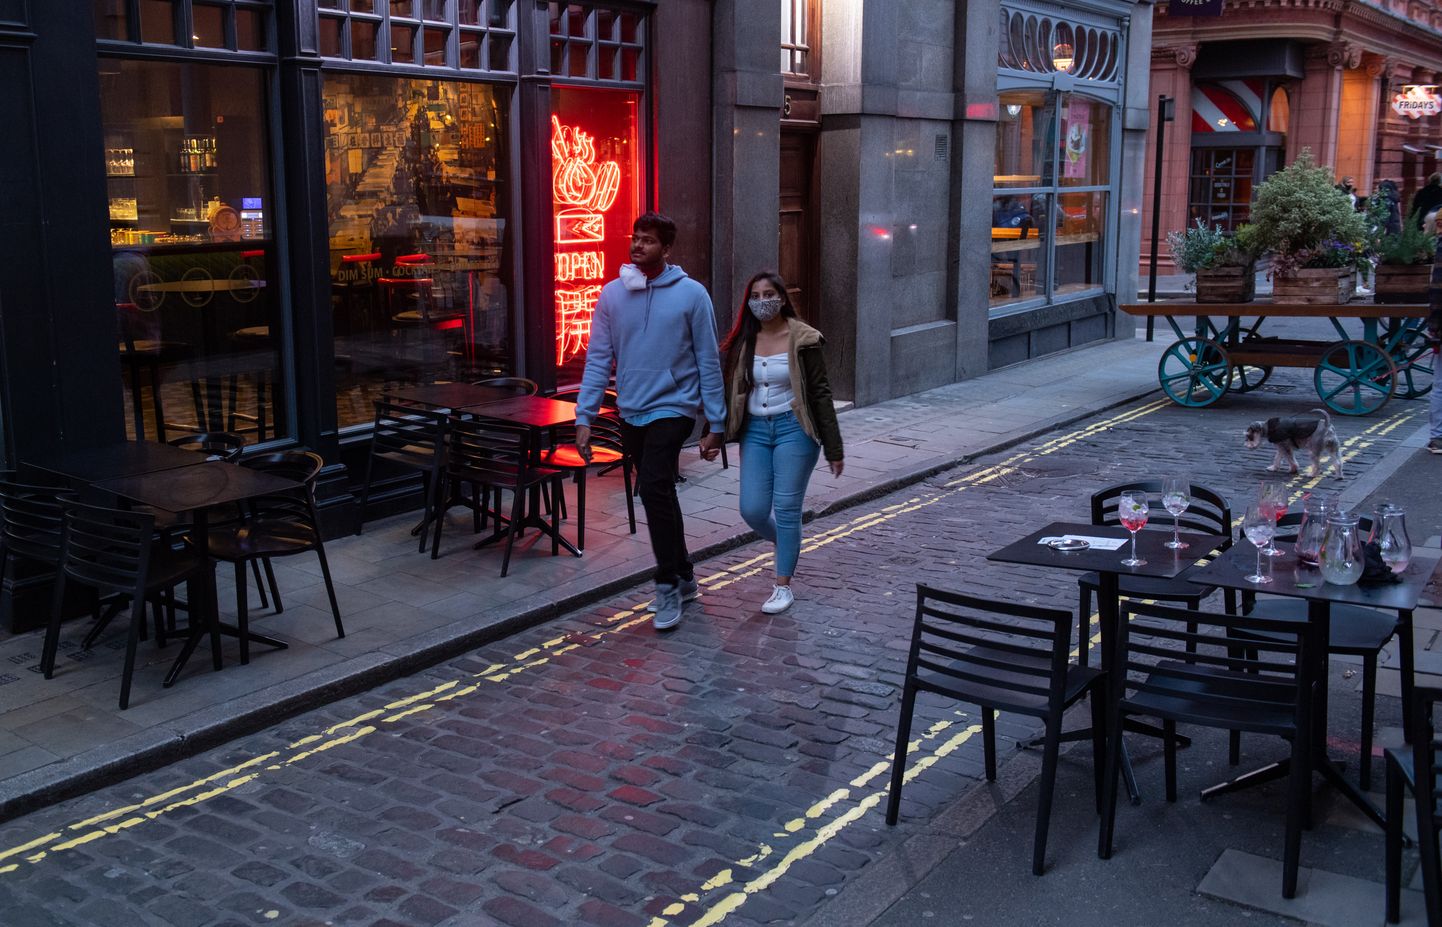 Tühjad lauad Londoni restorani ees.